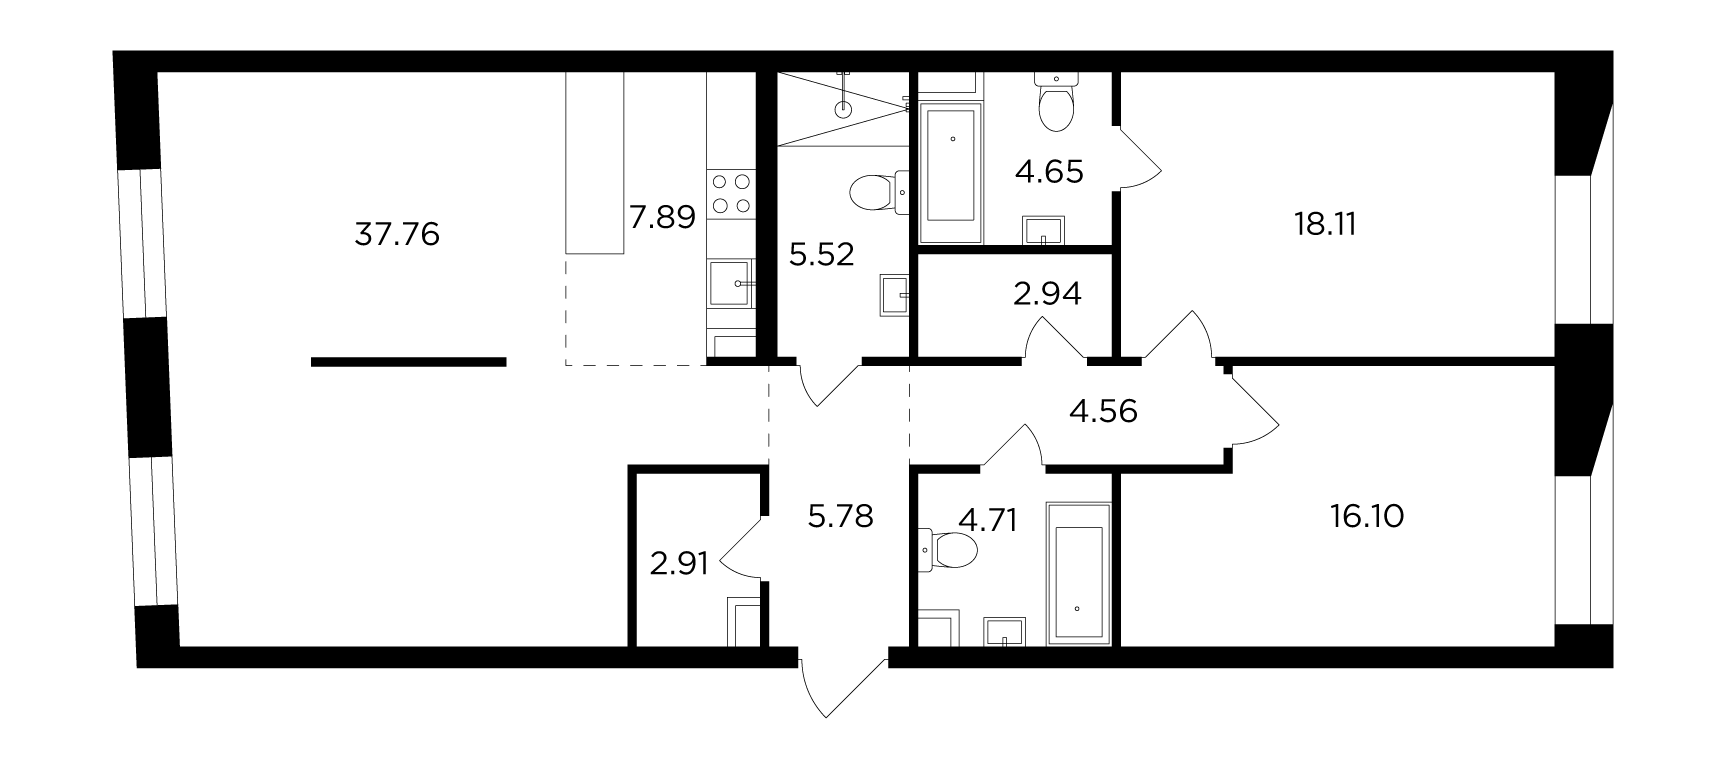 3-комнатная 111.25 м²